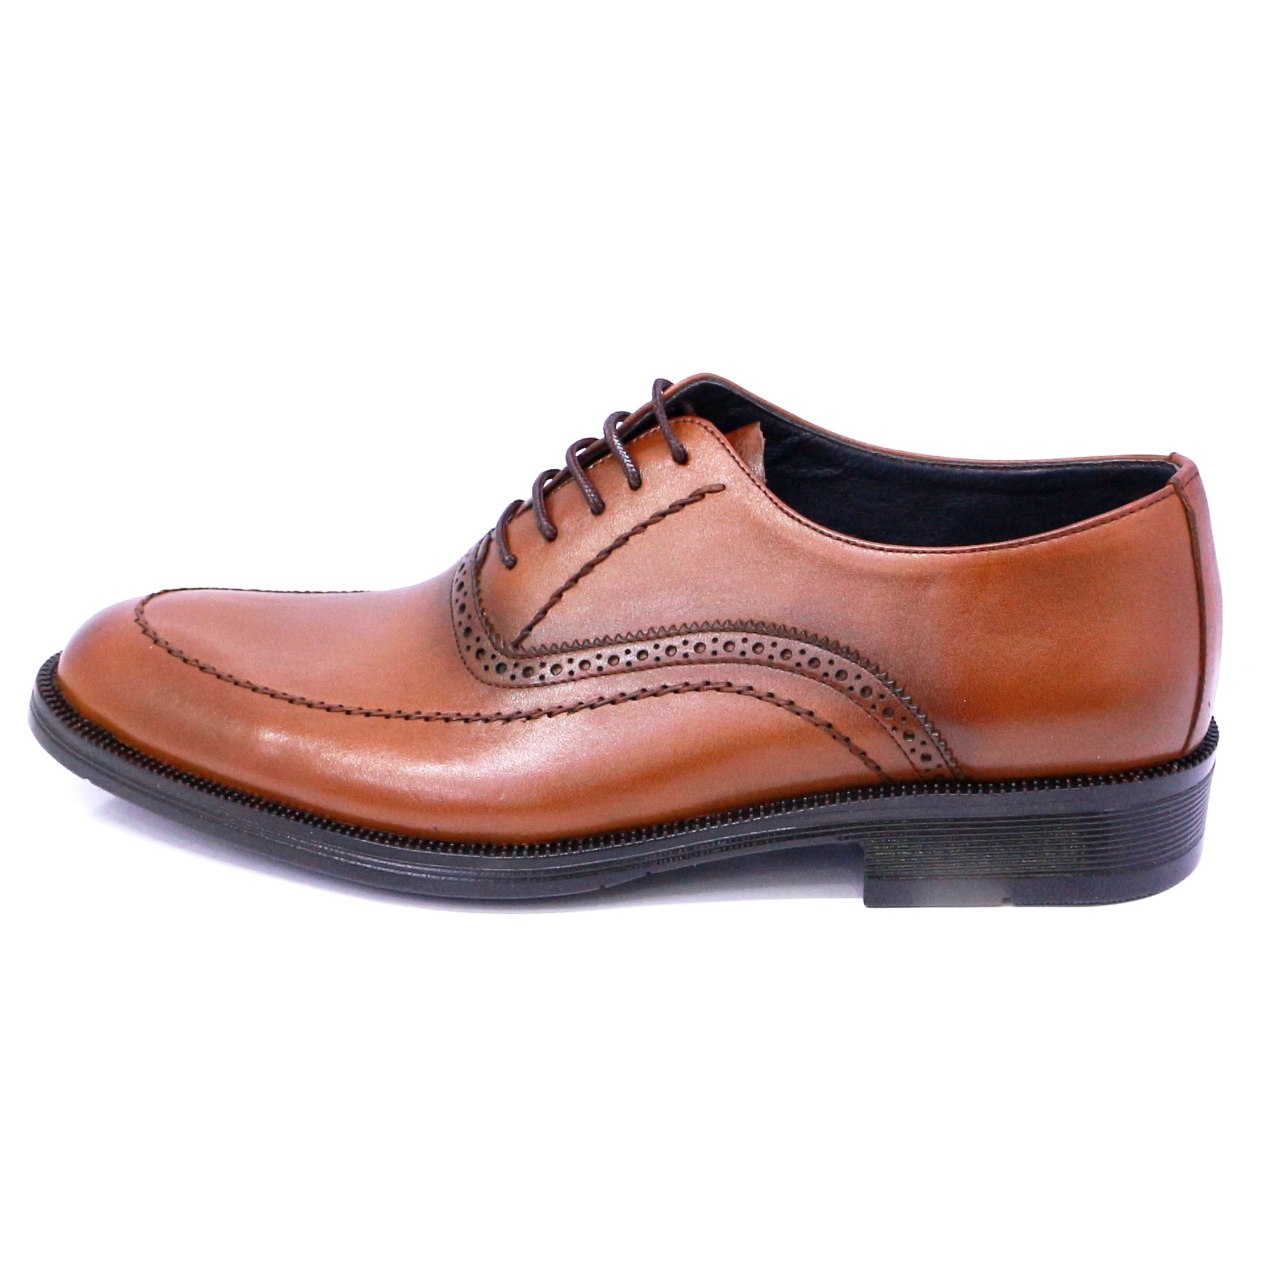 مشخصات، قیمت و خرید کفش مردانه مدل مجلسی هشت 99 رنگ عسلی | کالندز